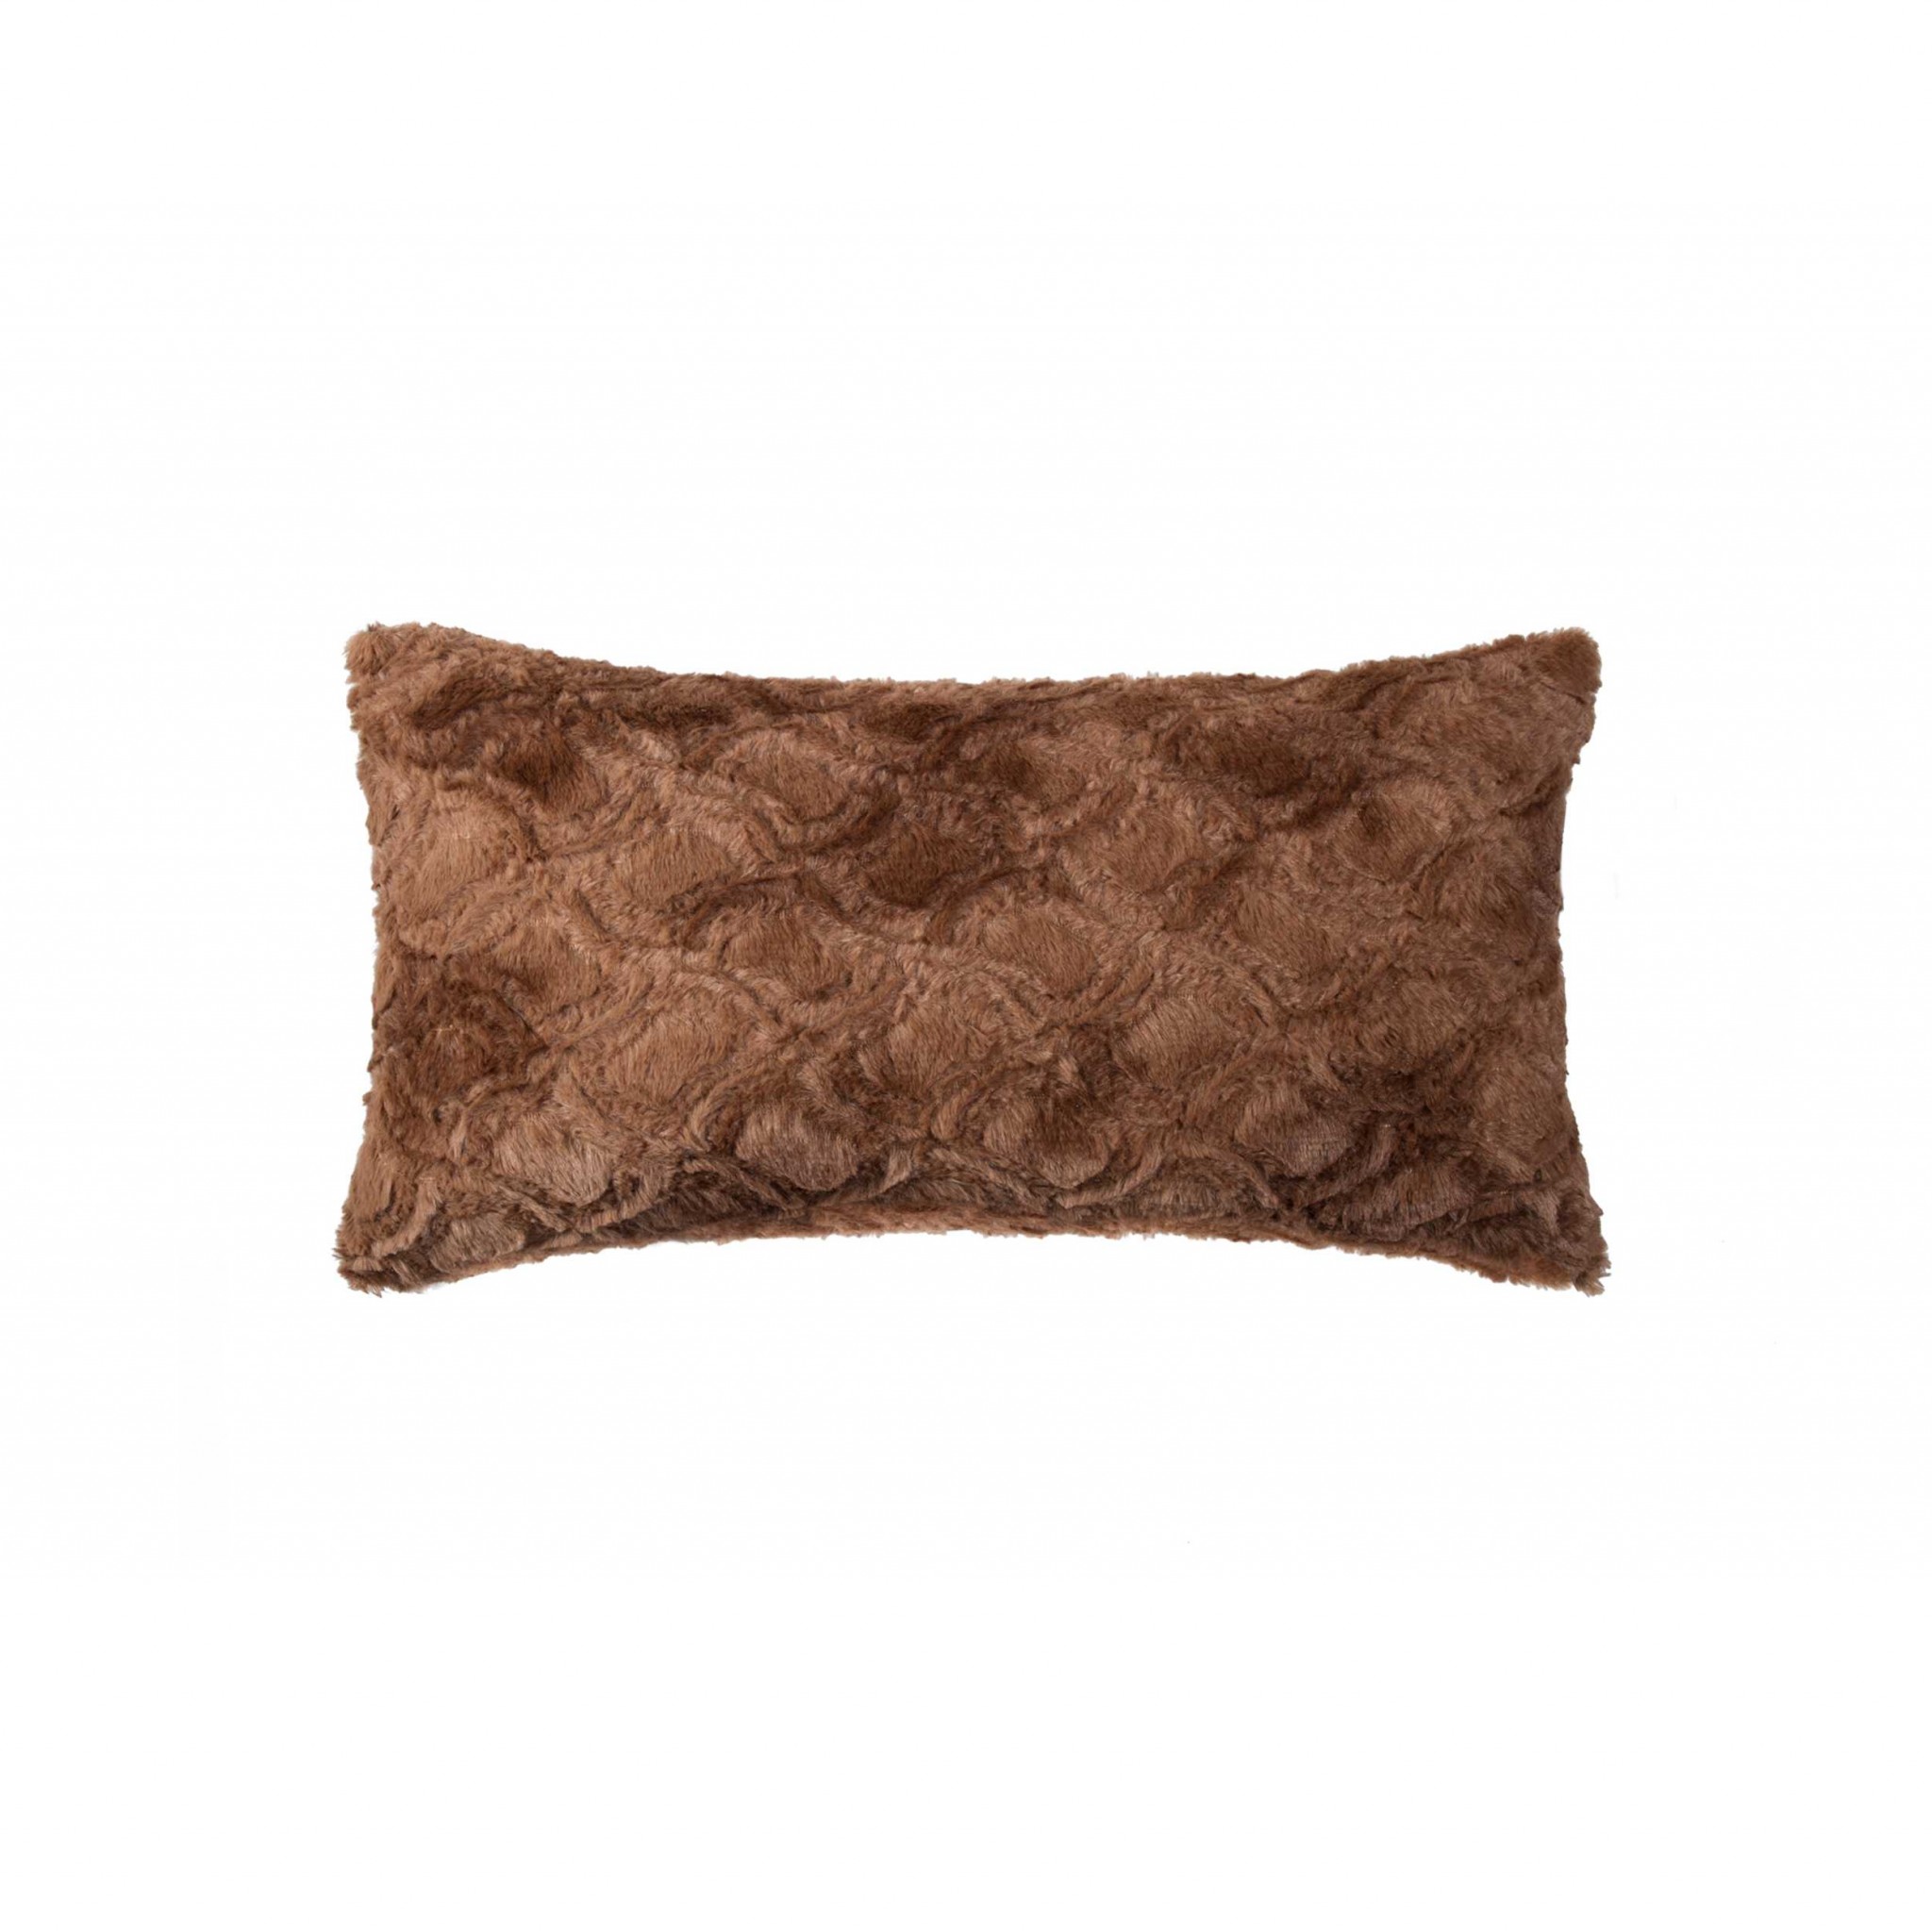 12" x 20" x 5" Brown Mink Faux - Pillow